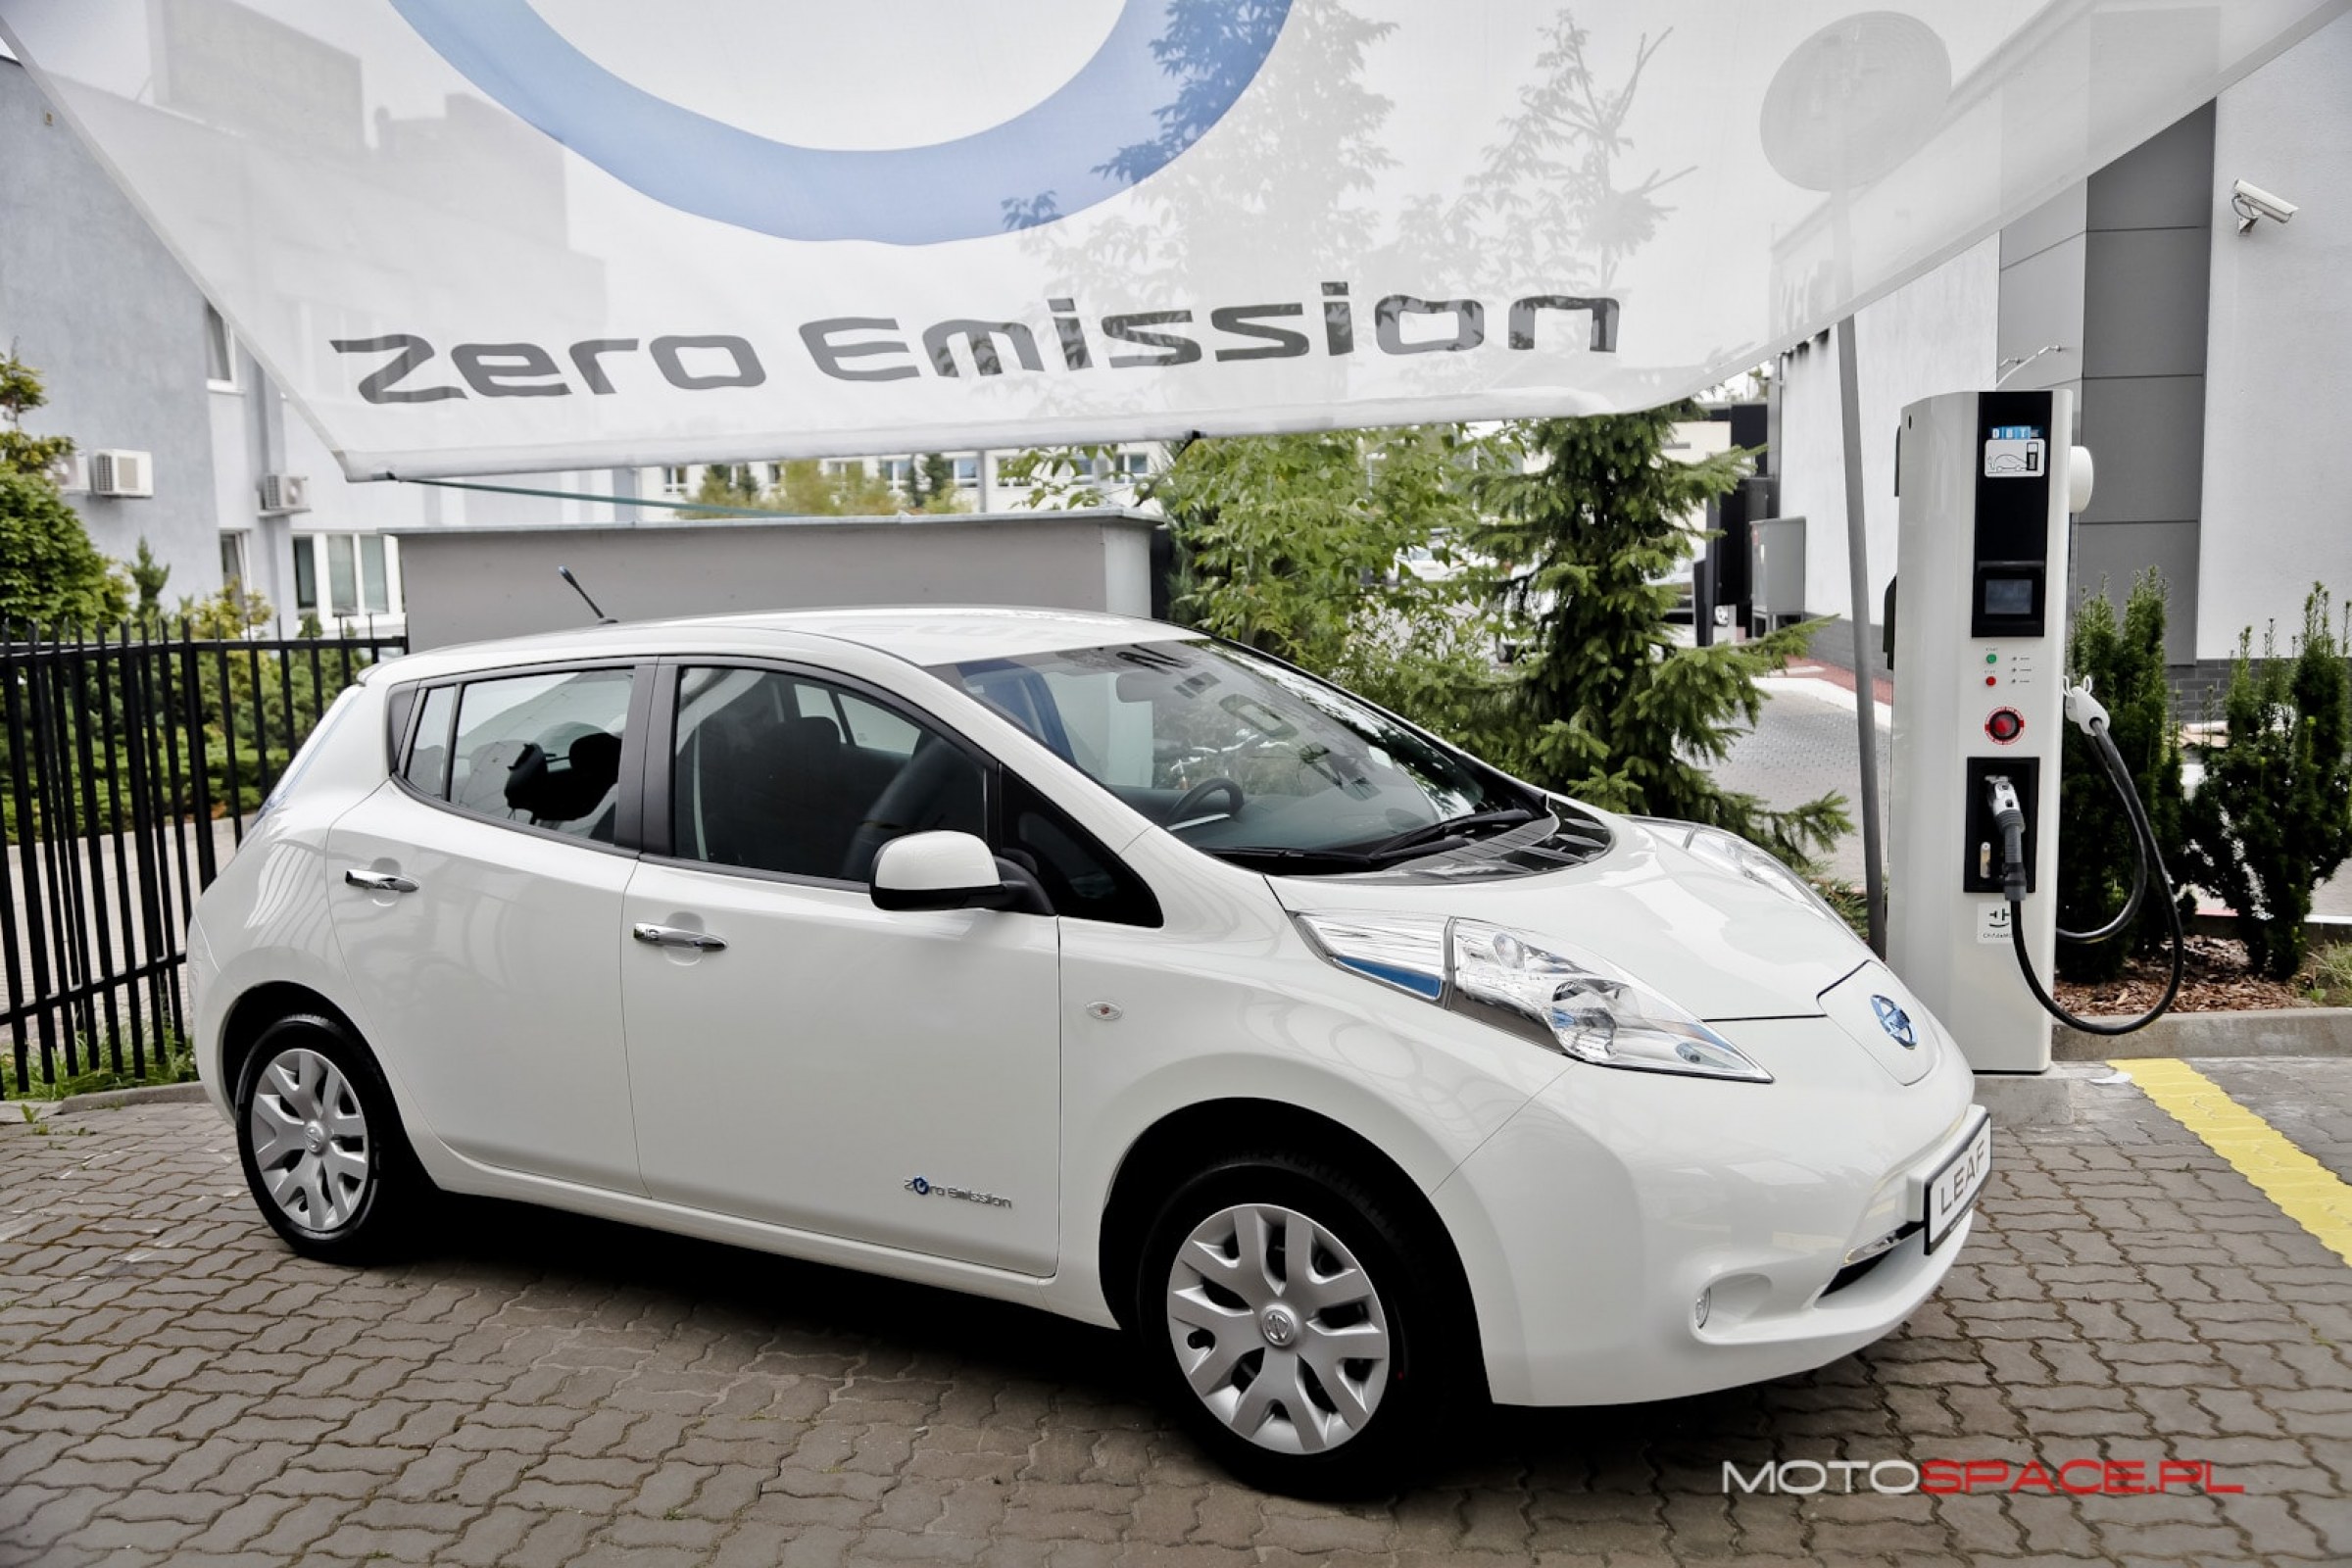 Nissan Leaf 2013 - elektryfikator świata